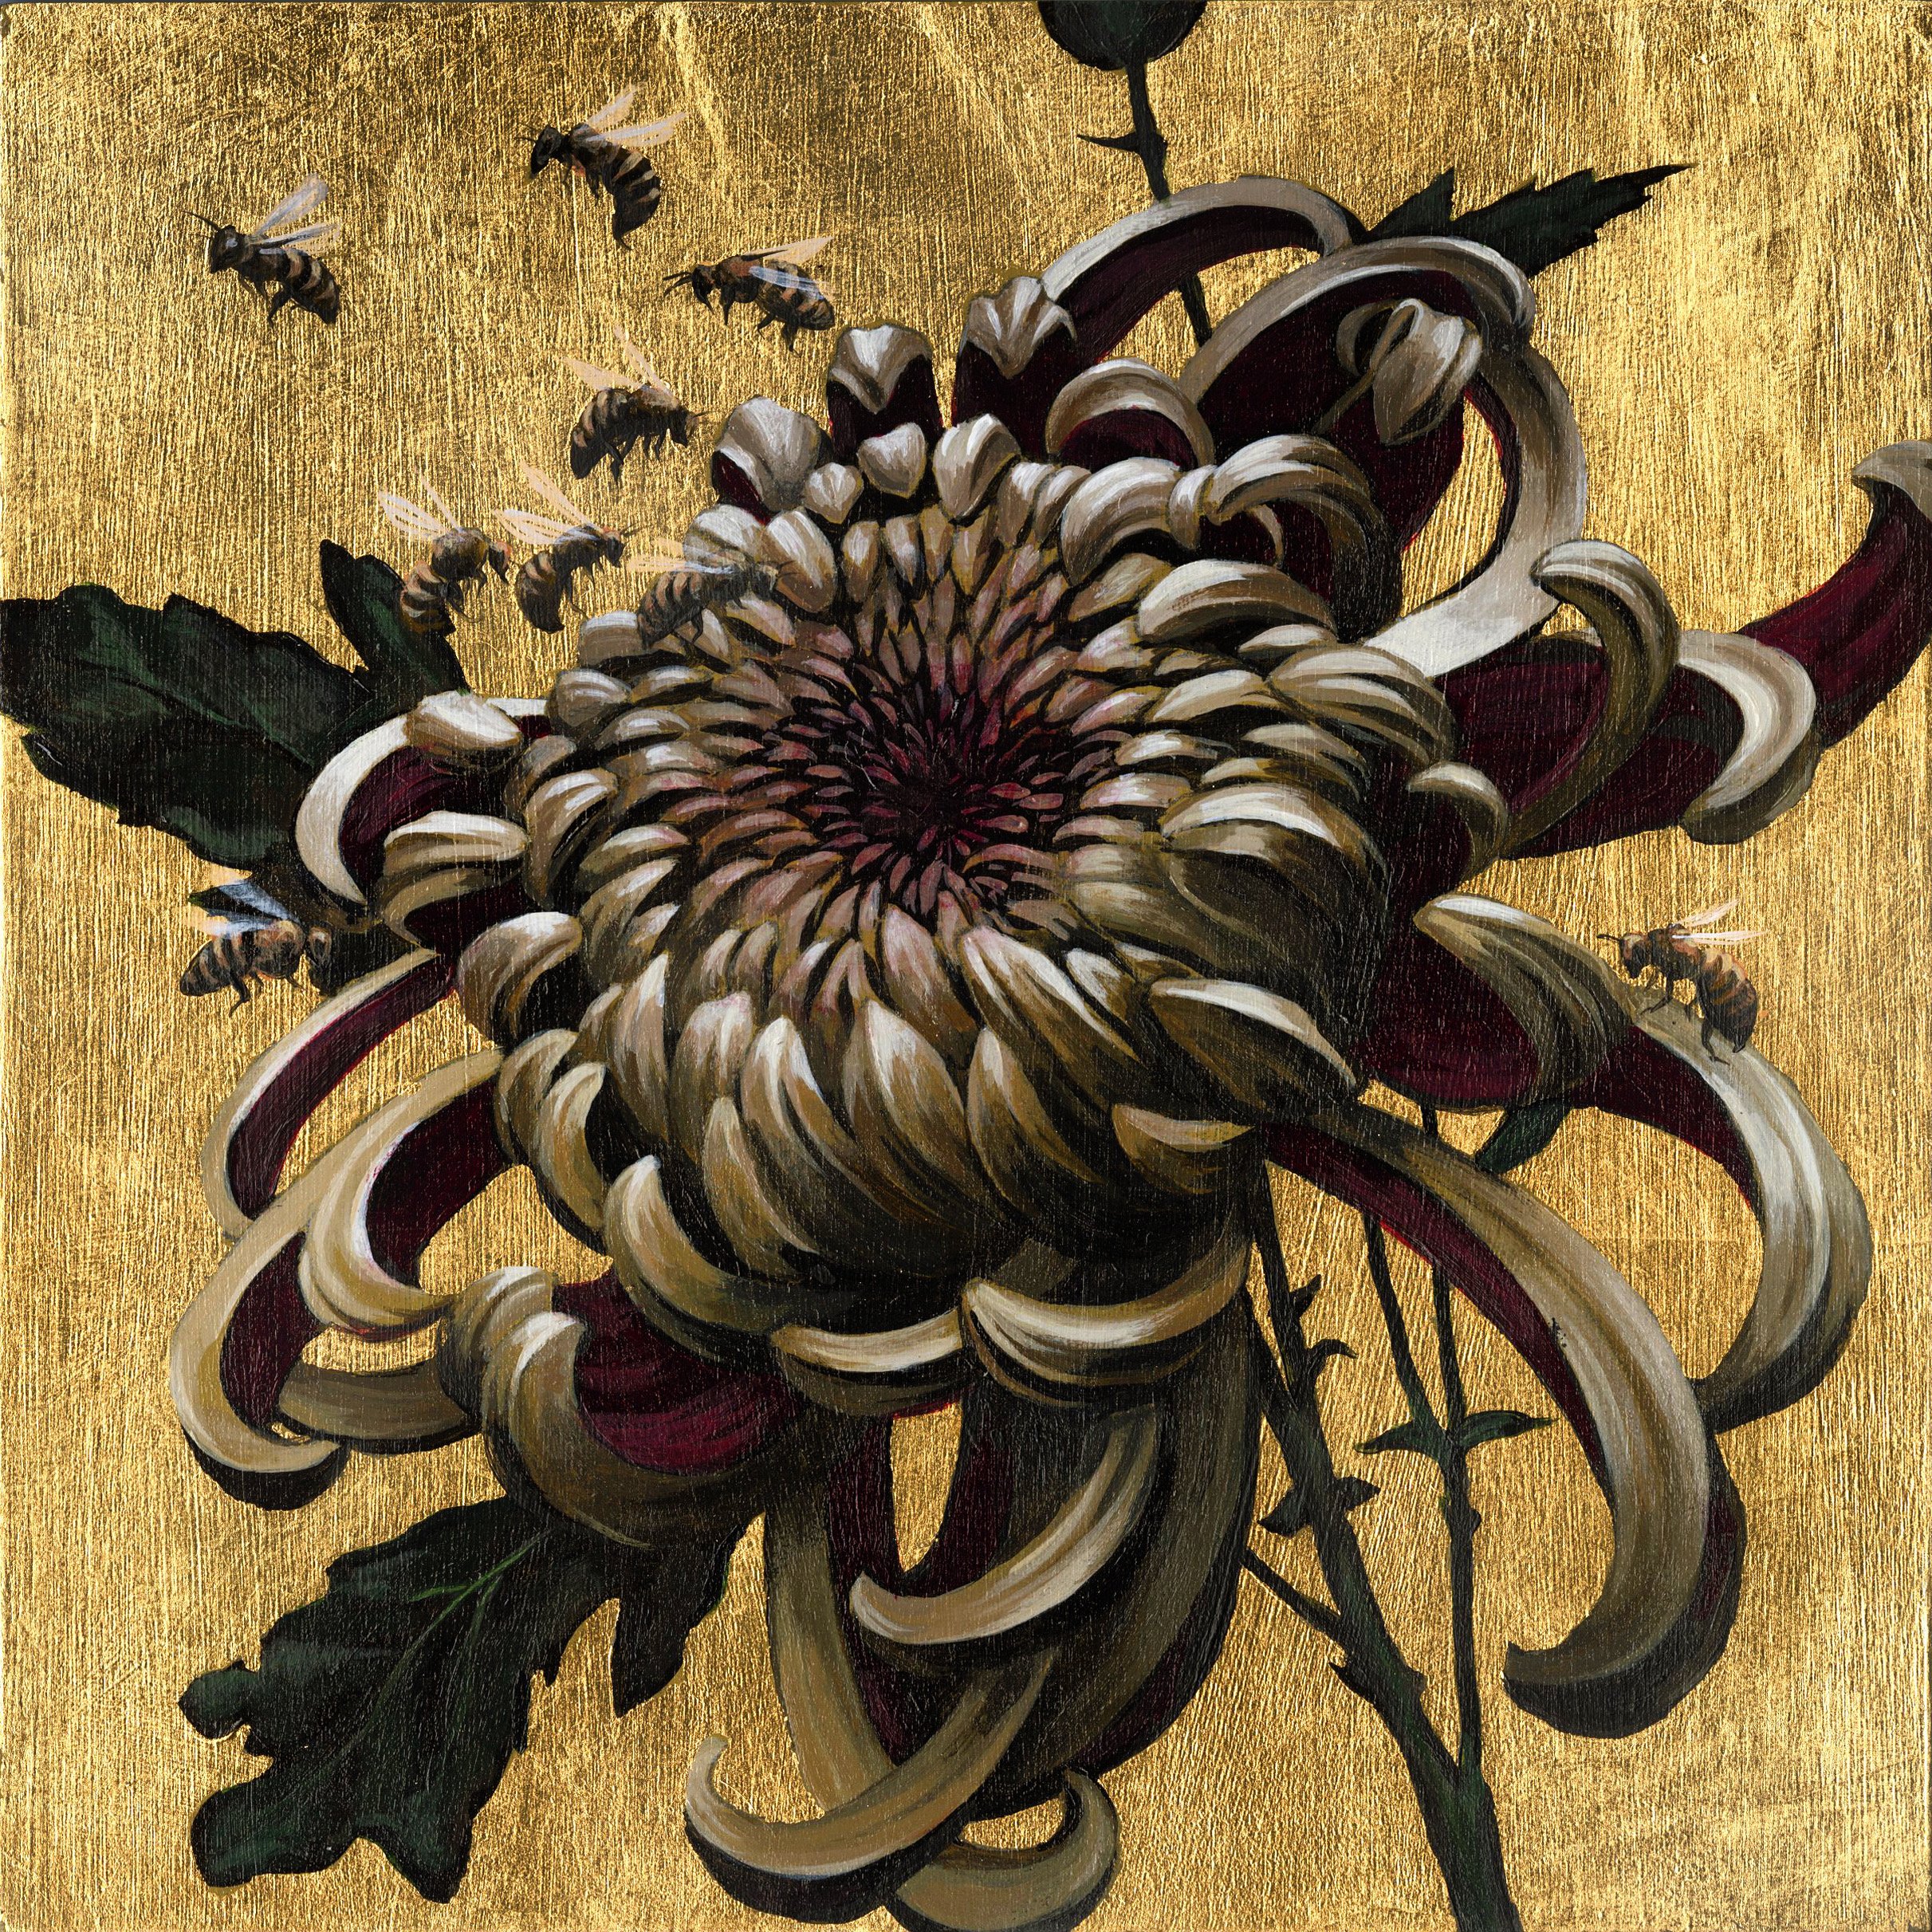 Chrysanthemum Cluster, 2021